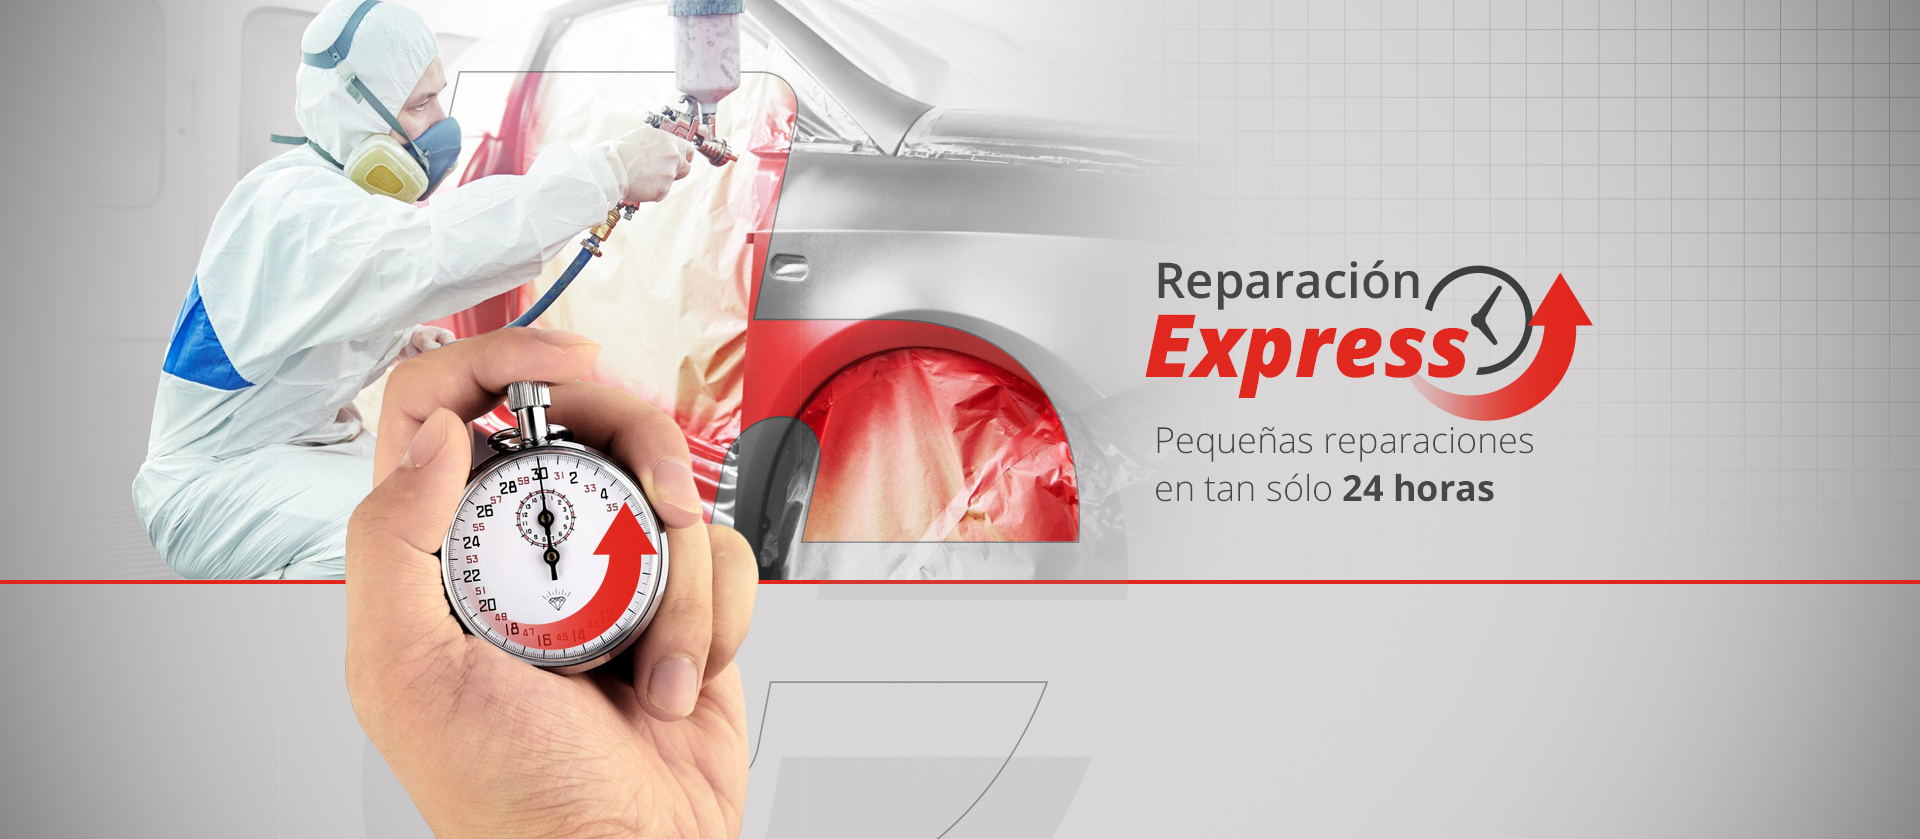 Reparacion Express